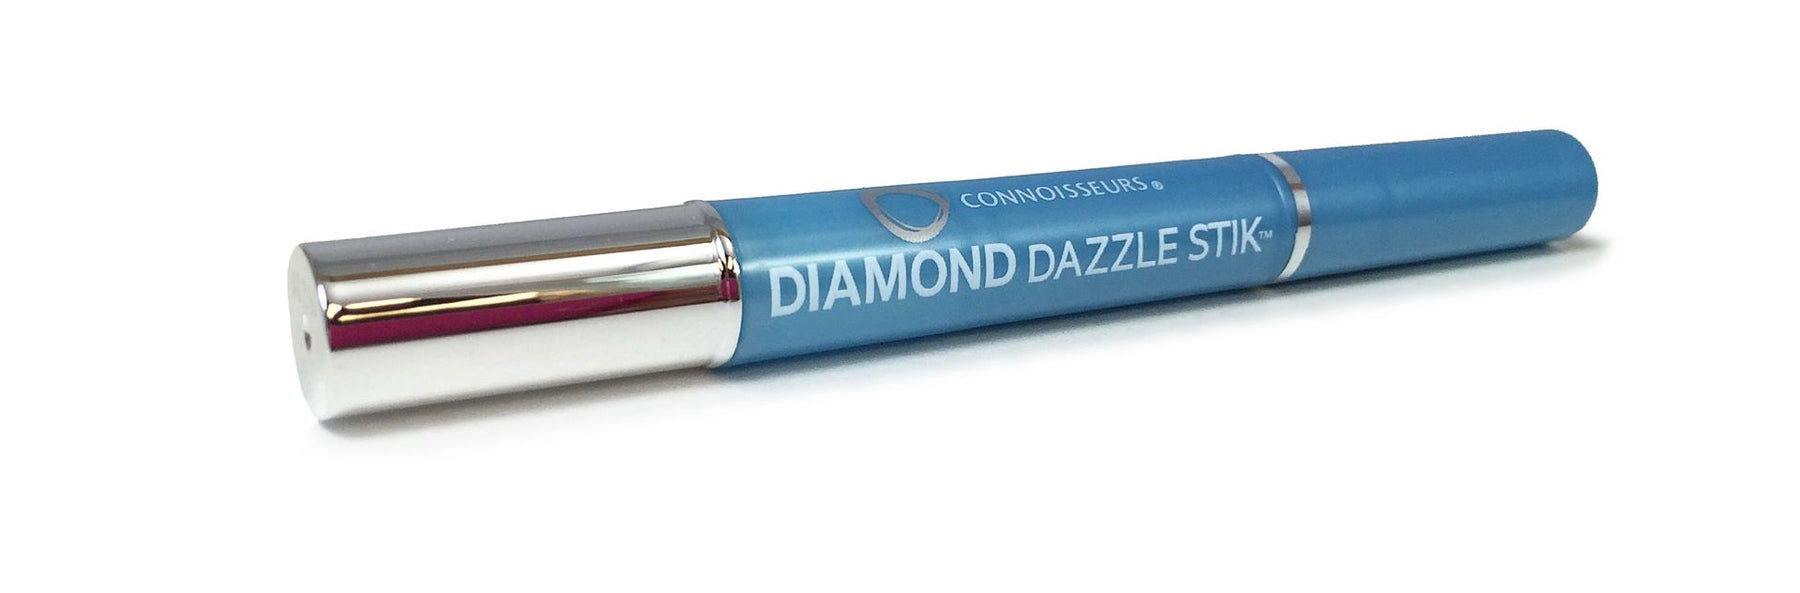 Connoisseurs Dazzle stik 1.5ml